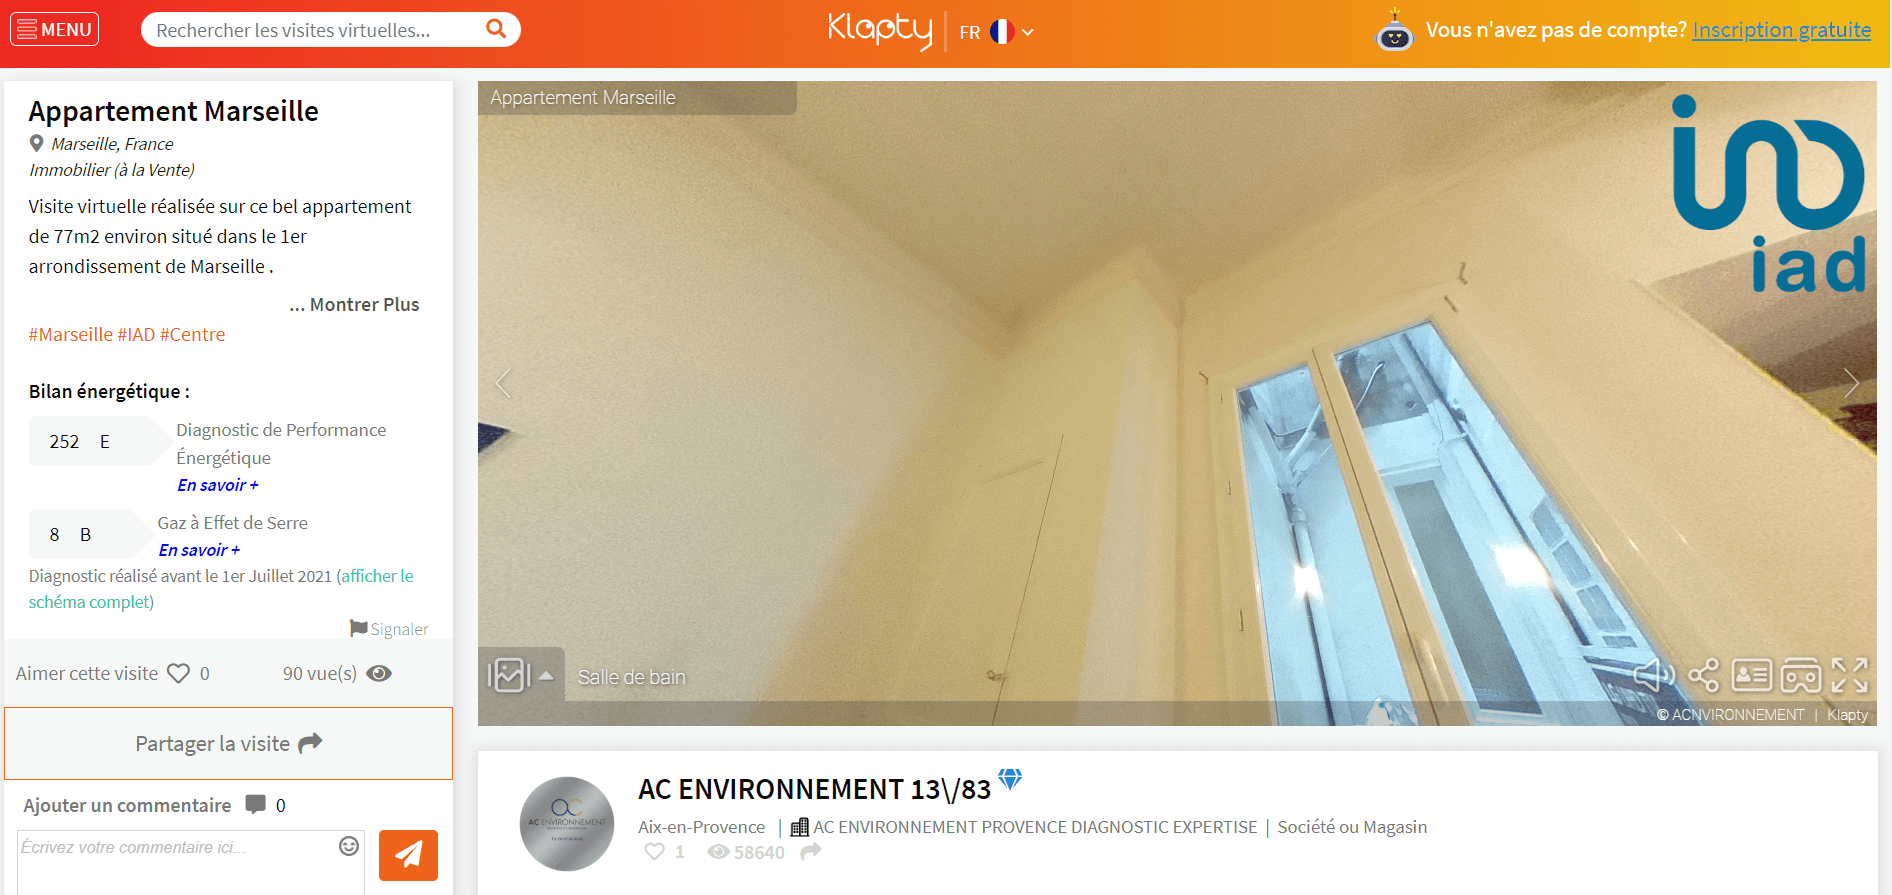 Vidéos interactives dans l'immobilier